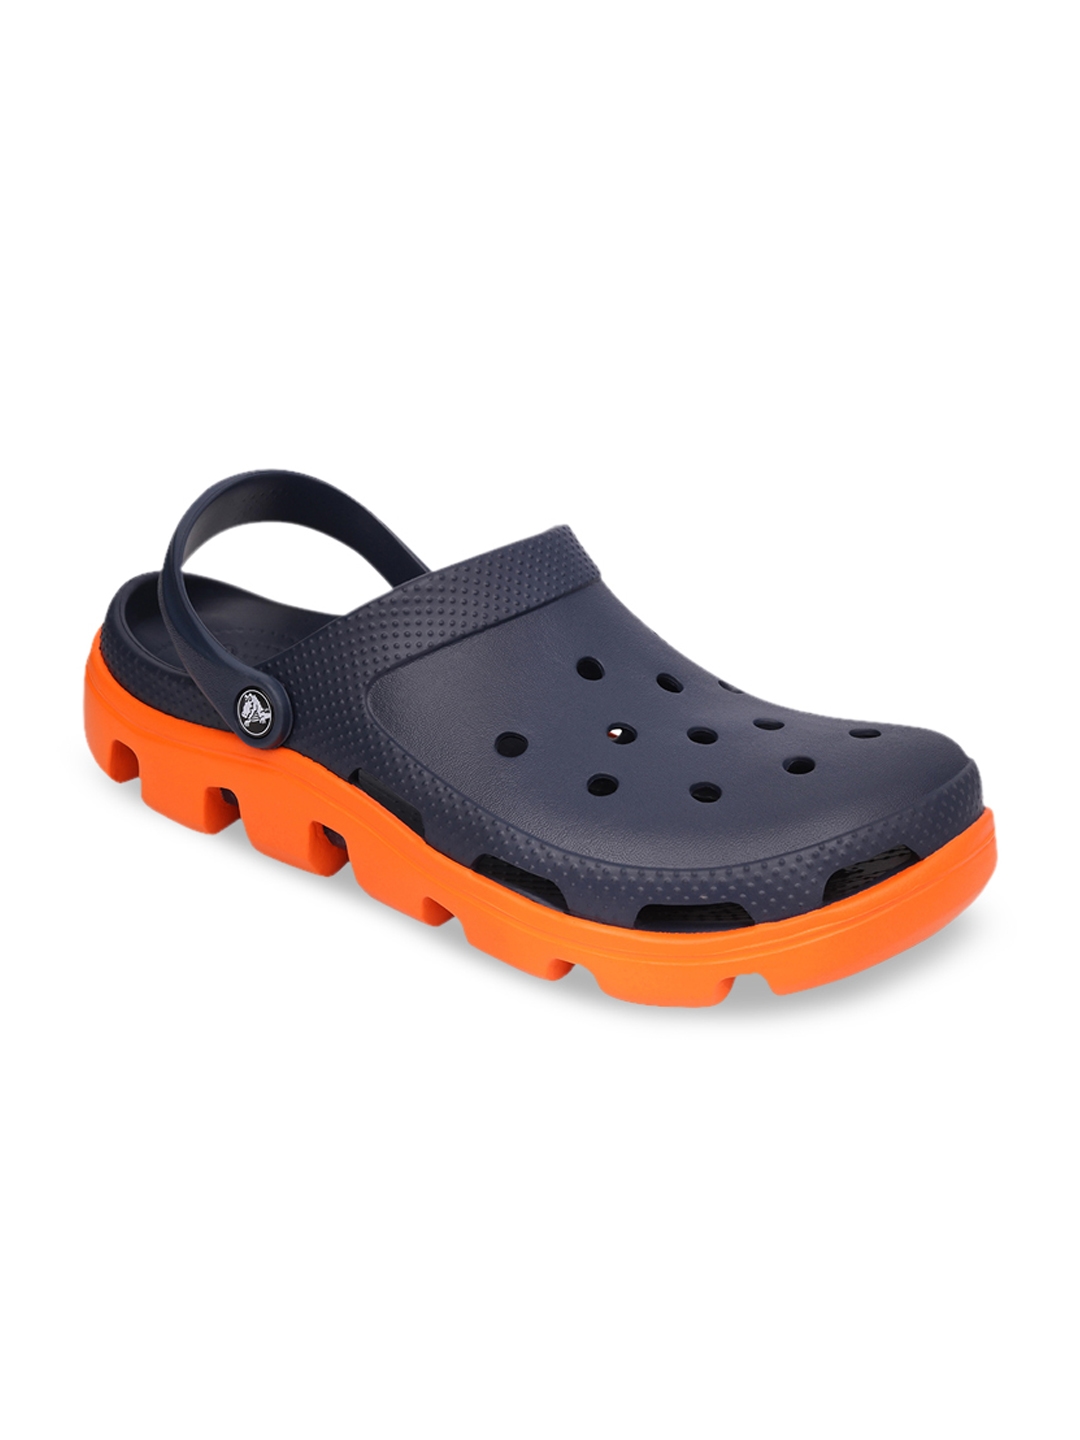 crocs duet sport clog orange